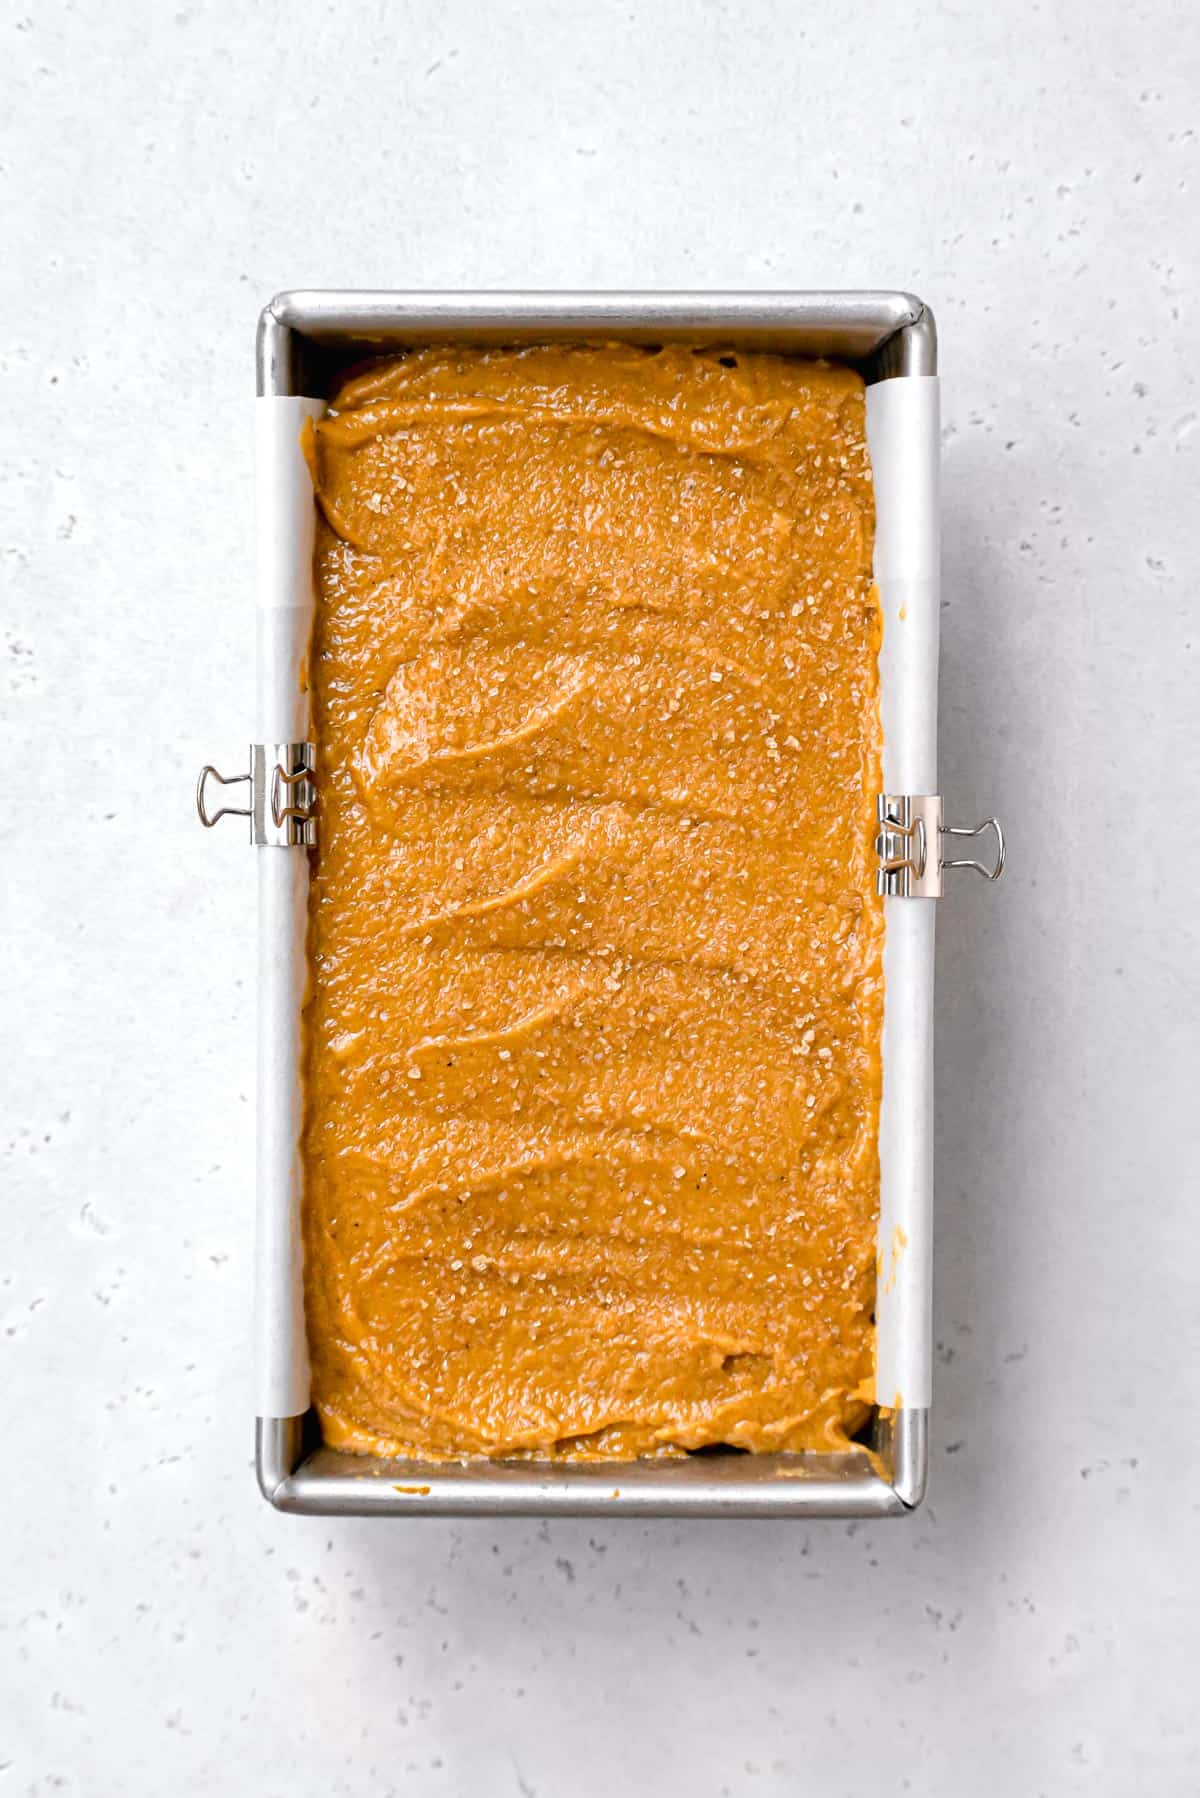 pumpkin bread batter with turbinado sugar on top in metal loaf pan.